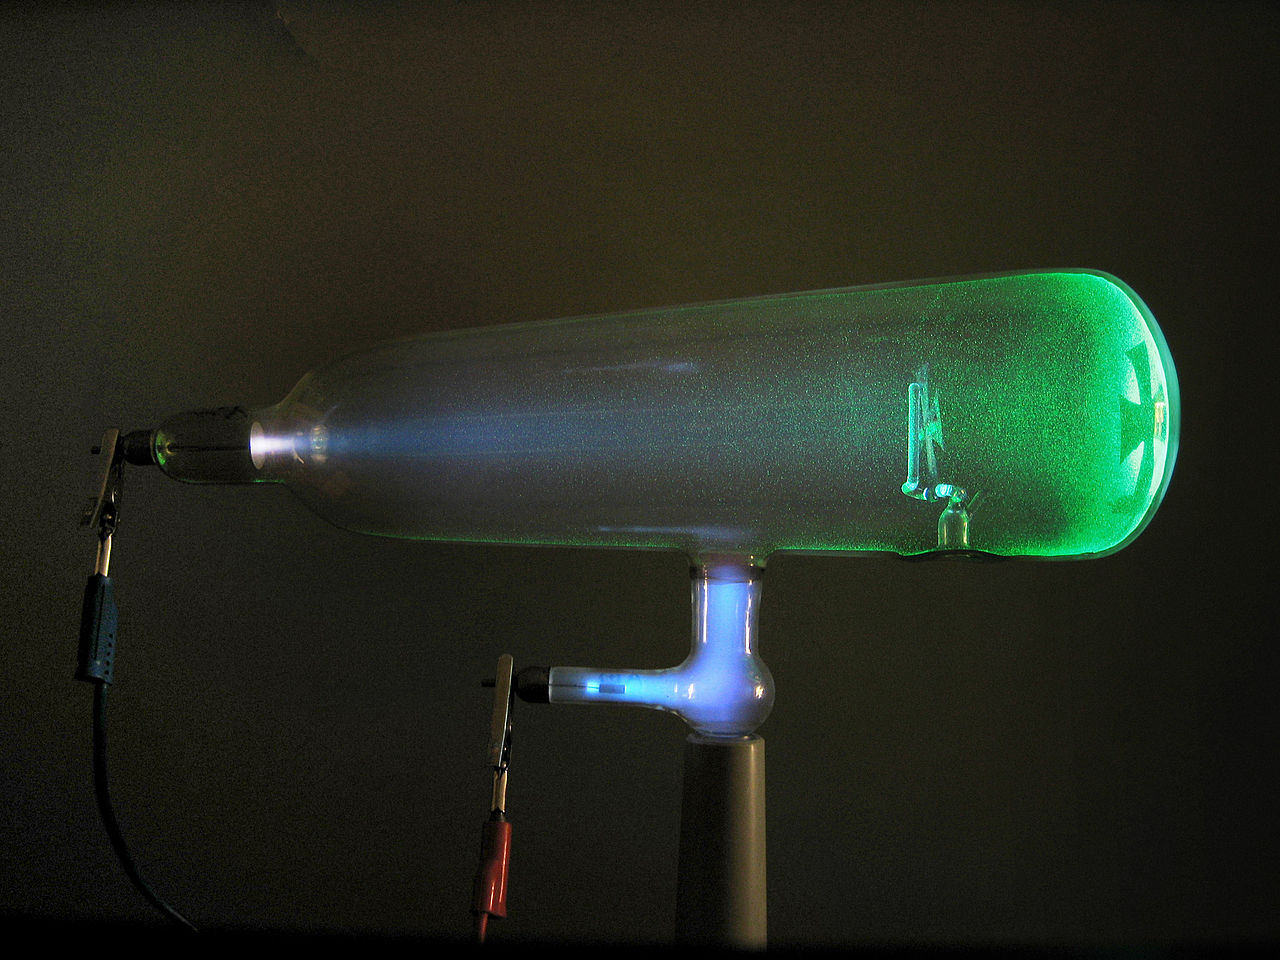 Promienie katodowe XIX wieku - od czasu Faradaya (1838), w lampie przy niskim cis nieniu (próz nia, lampy próz niowej), widac s wietlny łuk miedzy elektrodami. zdjecia po prawej.